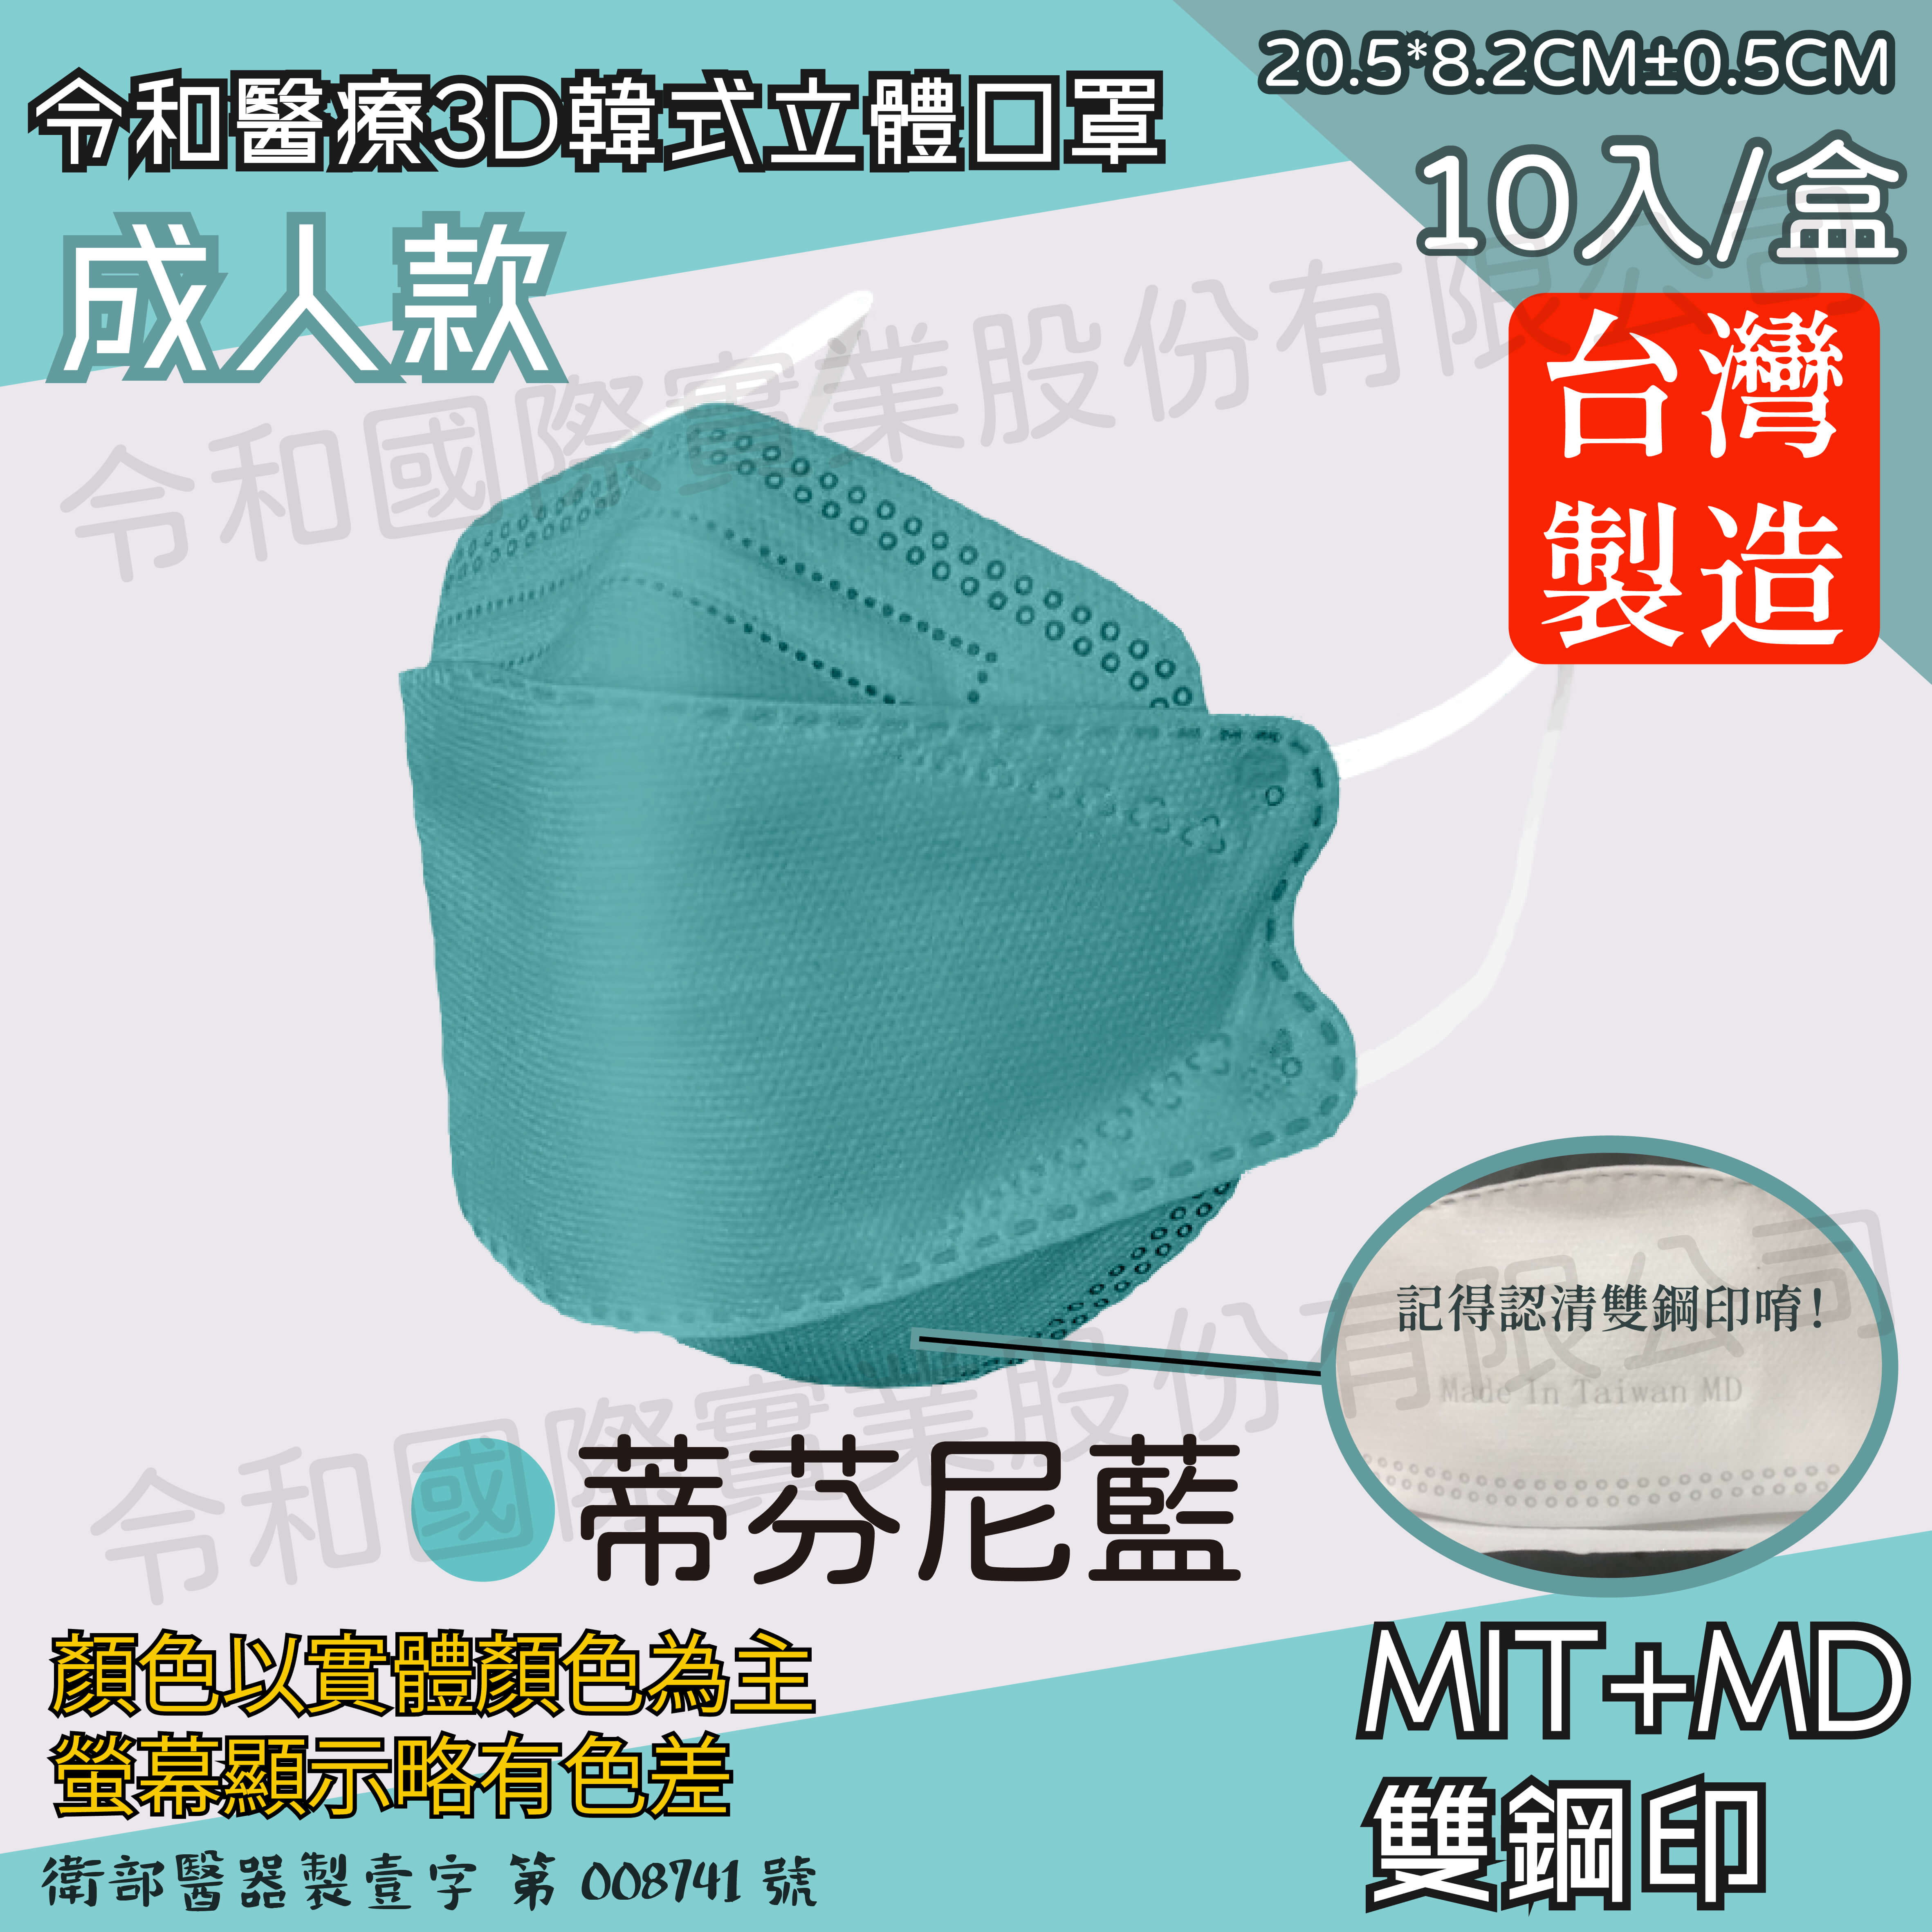 成人3d現貨快出 令和醫療韓式立體口罩蒂芬尼藍一盒10入 令和國際實業股份有限公司 台灣口罩工廠 醫療口罩 彩色口罩